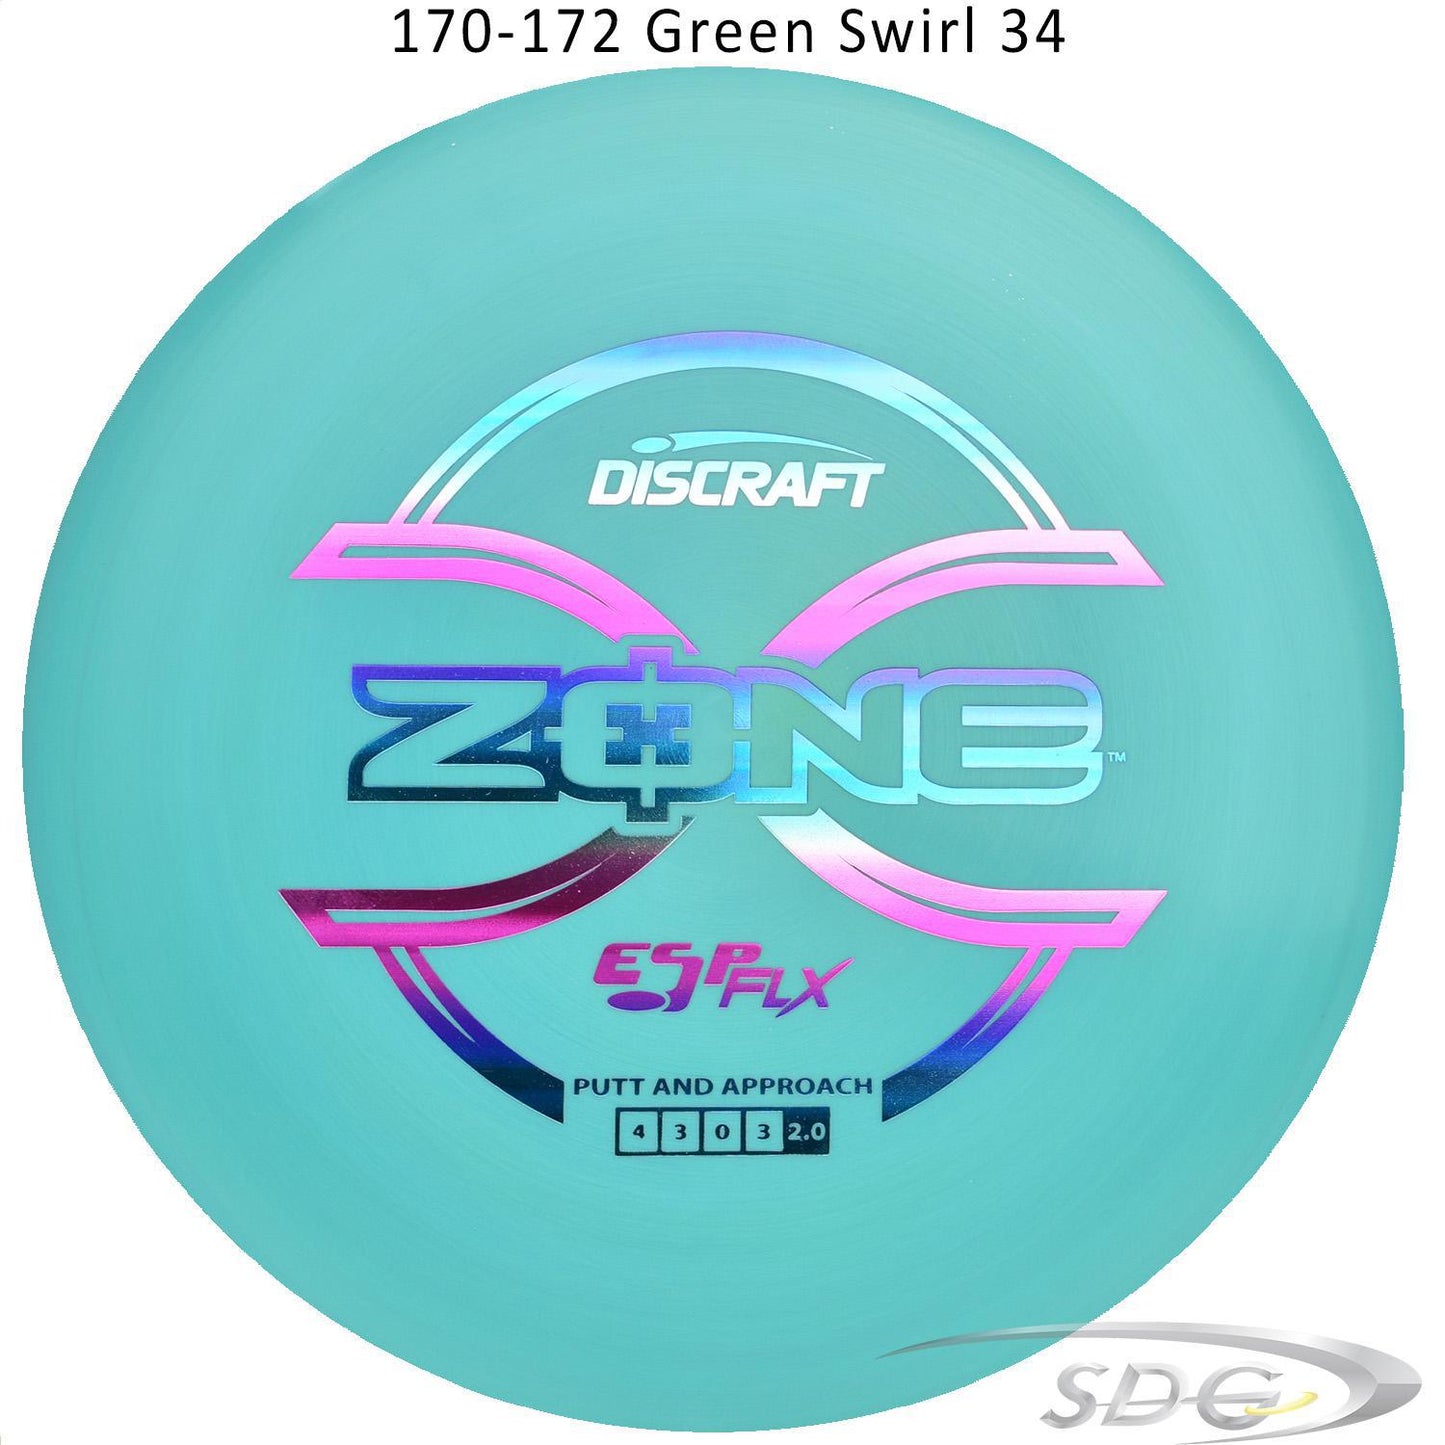 discraft-esp-flx-zone-disc-golf-putter 170-172 Green Swirl 34